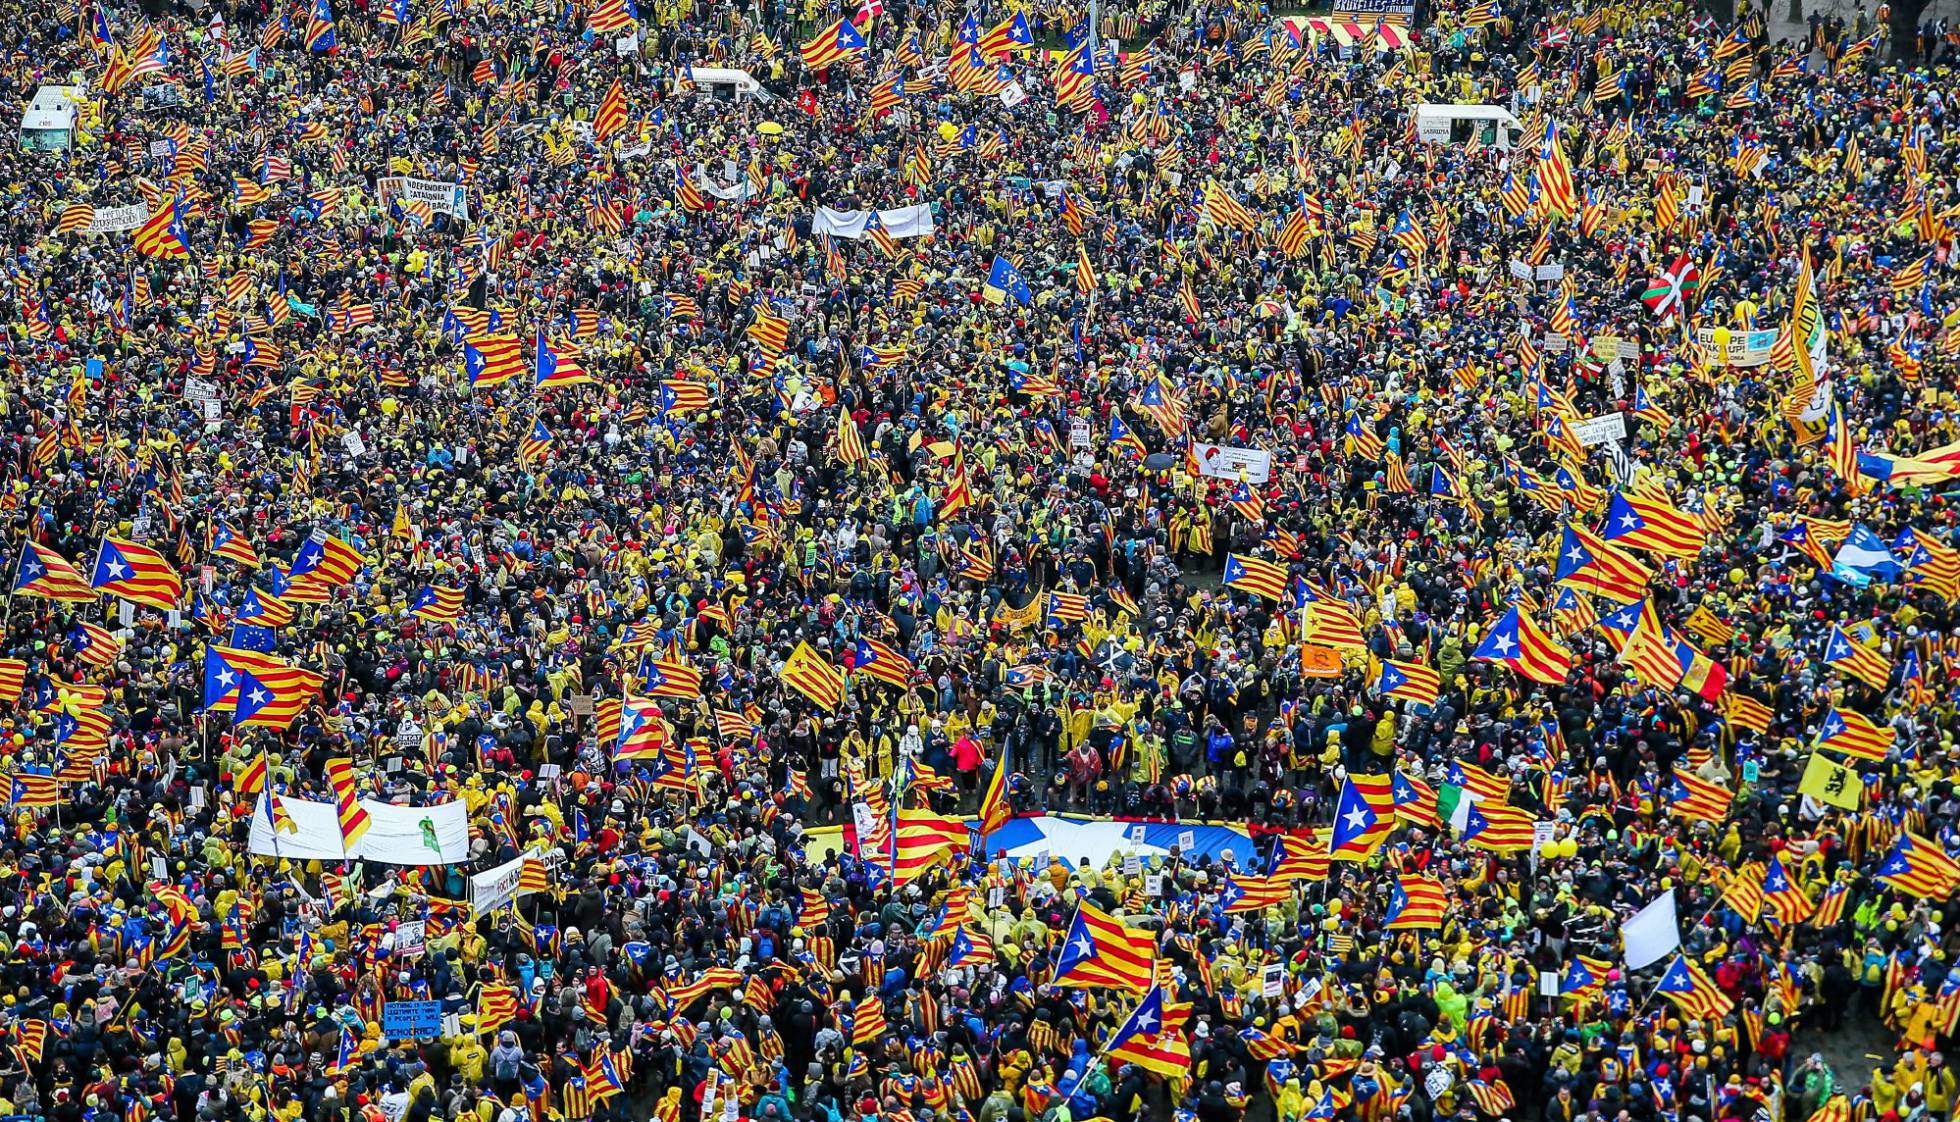 Conflicto "nacionalista" Catalunya, España. [2] - Página 8 1512669200_825306_1512669548_noticia_normal_recorte1